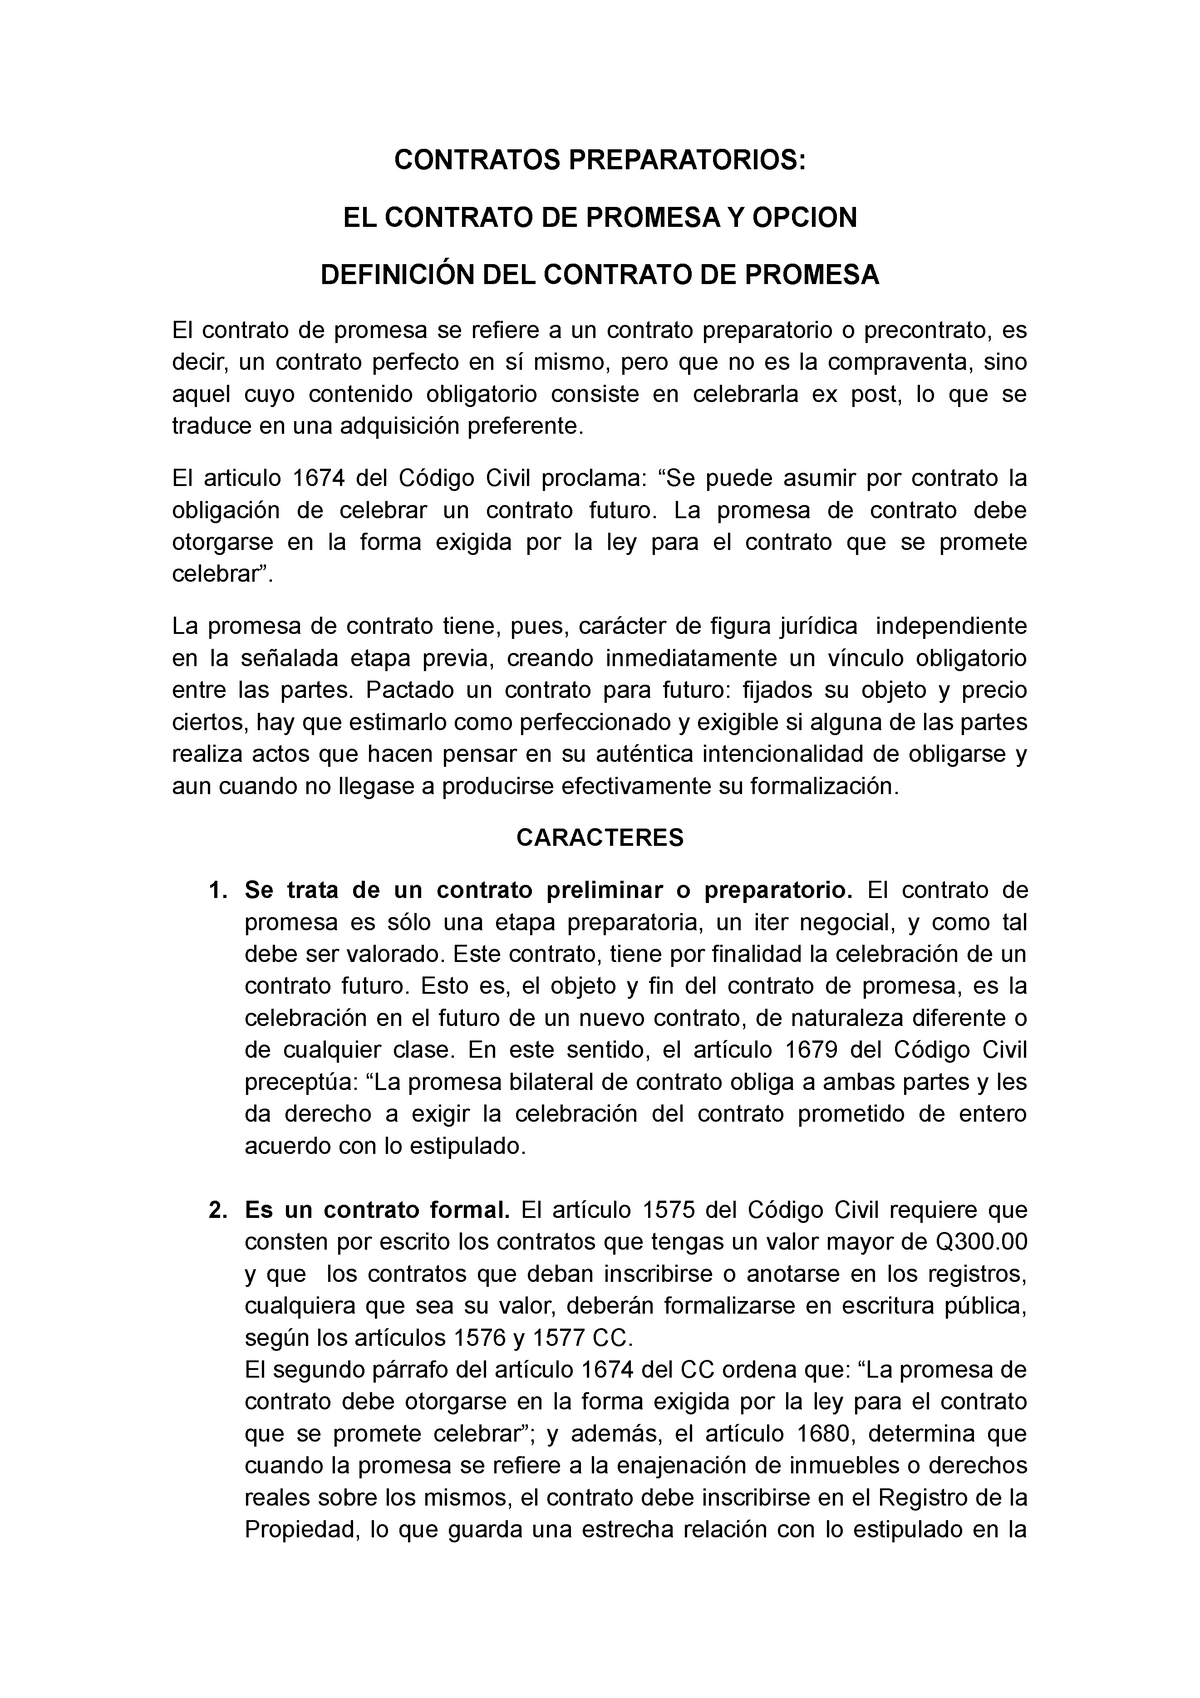 Contratos Preparatorios Contratos Preparatorios El Contrato De Promesa Y Opcion DefiniciÓn 1005